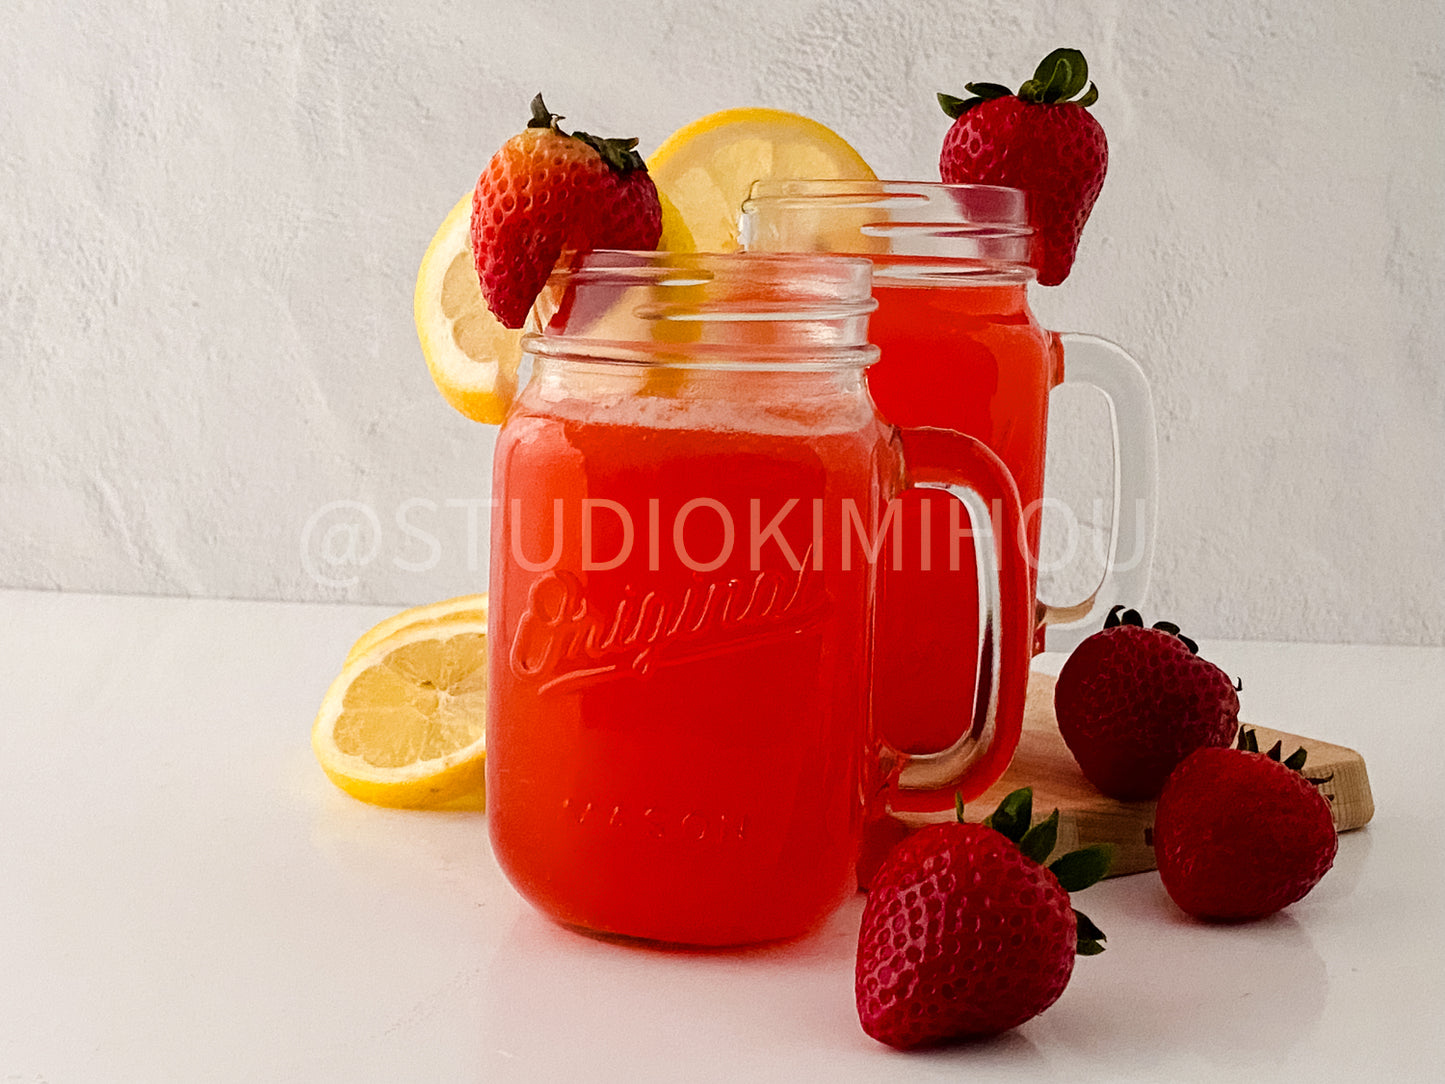 PLR - Strawberry Lemonade